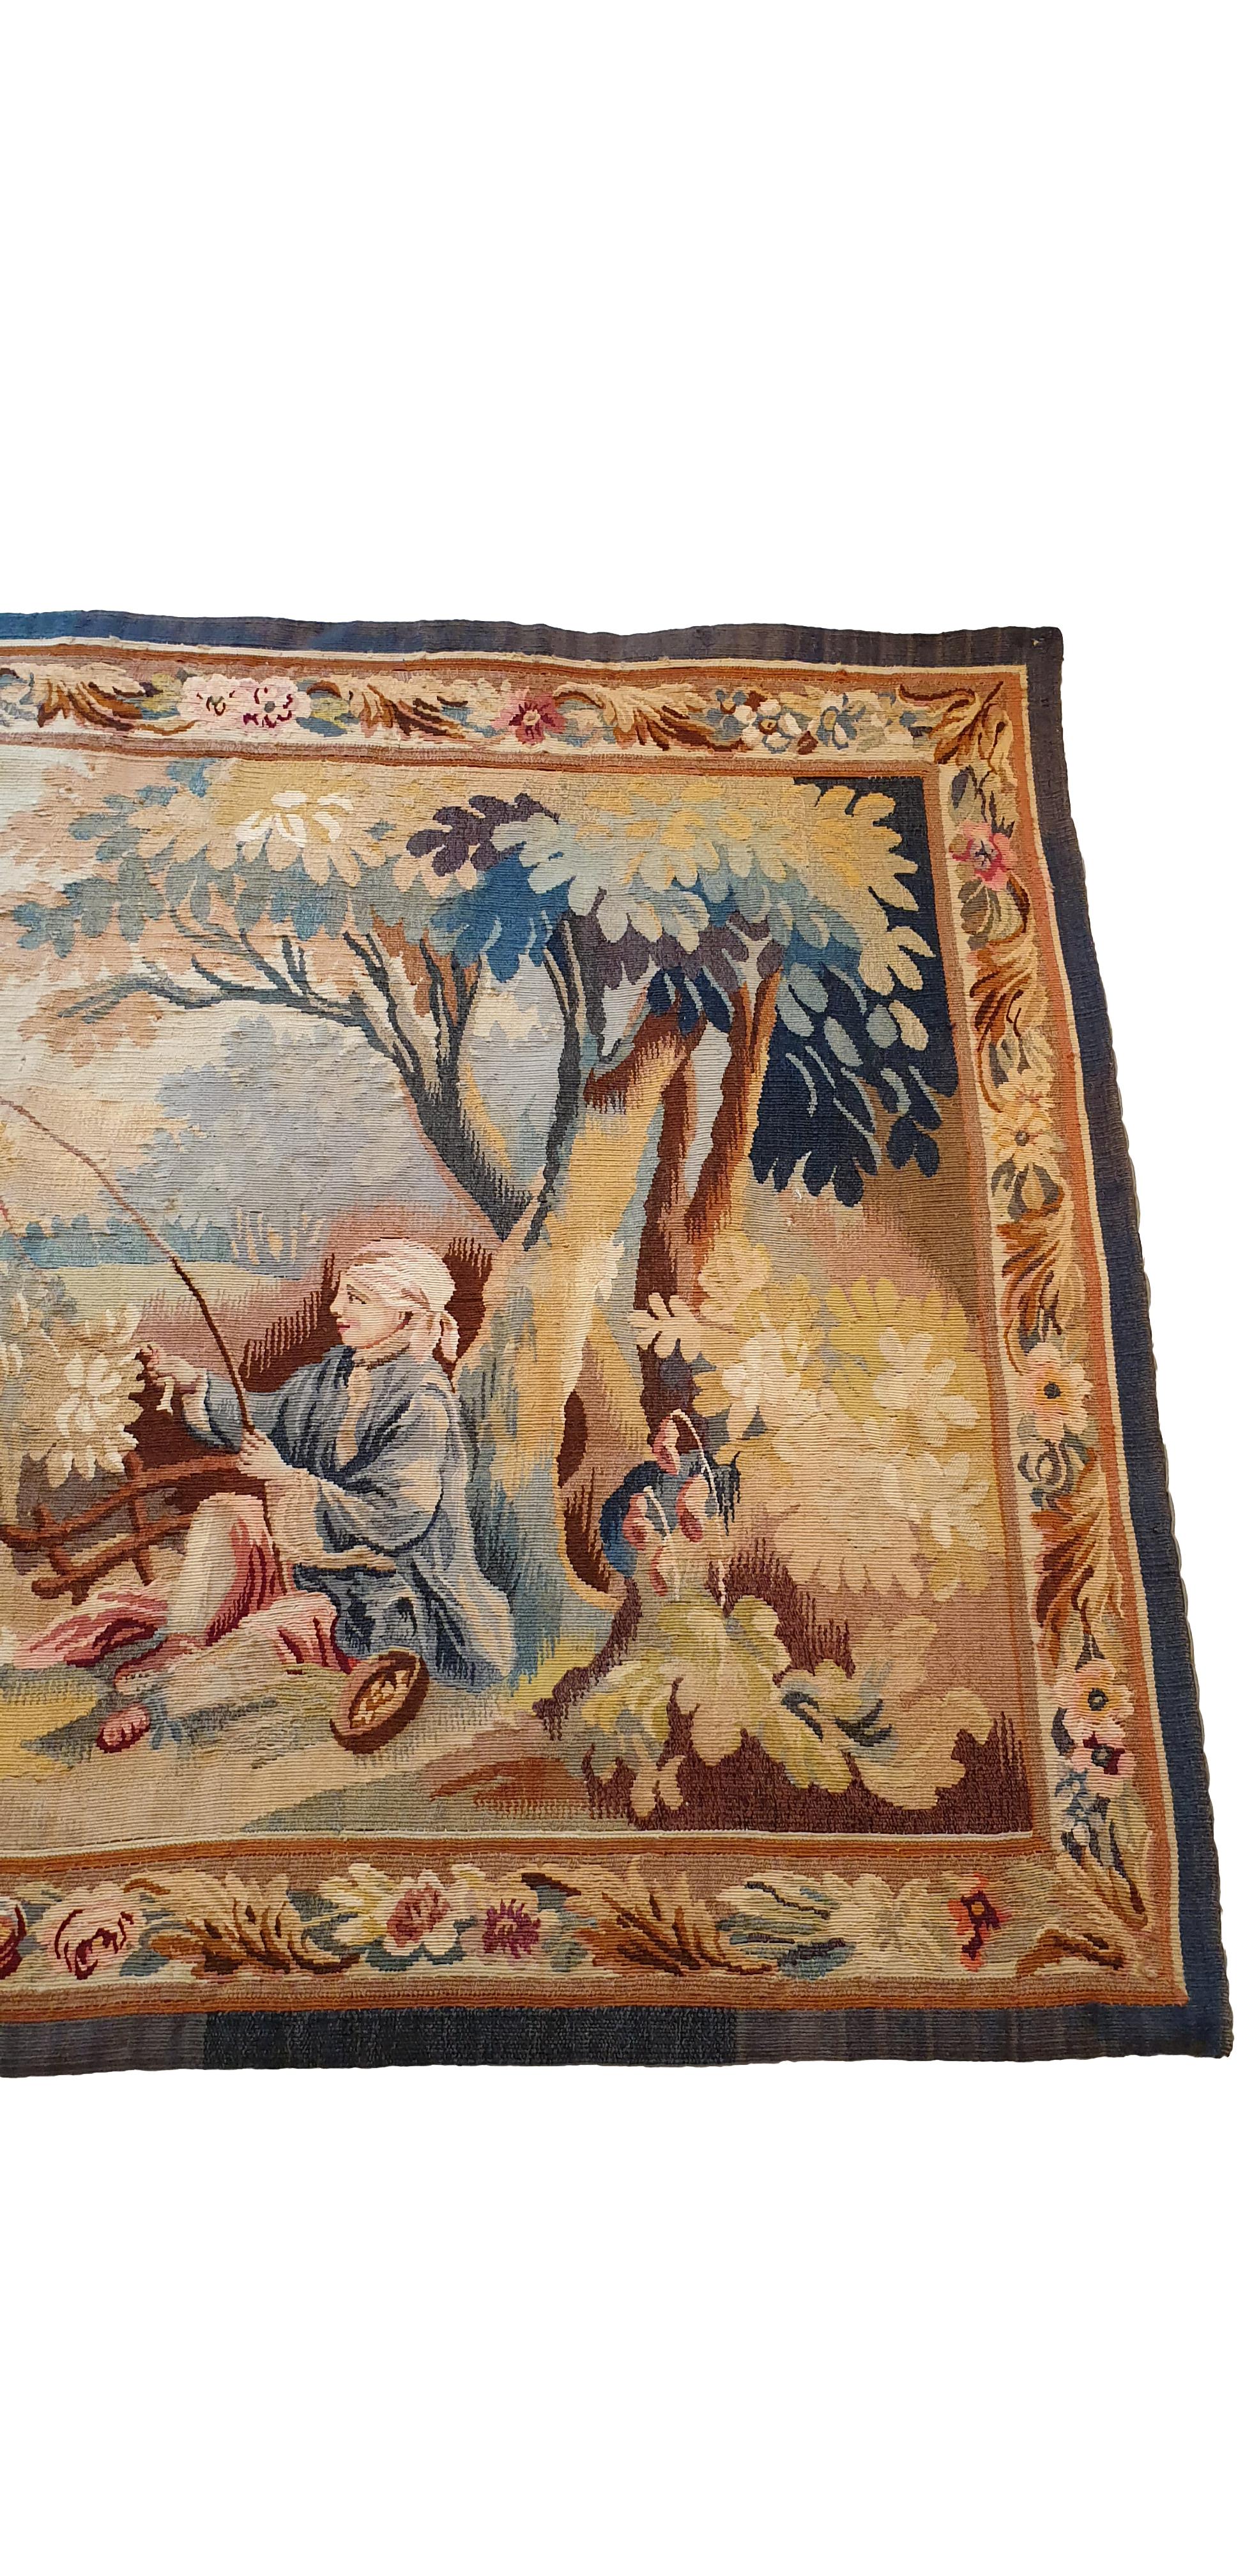 N° 767 - Wandteppich Aubusson aus dem 20.
in sehr gutem Allgemeinzustand und frischen Farben 

Maße: 165 x 113 cm.